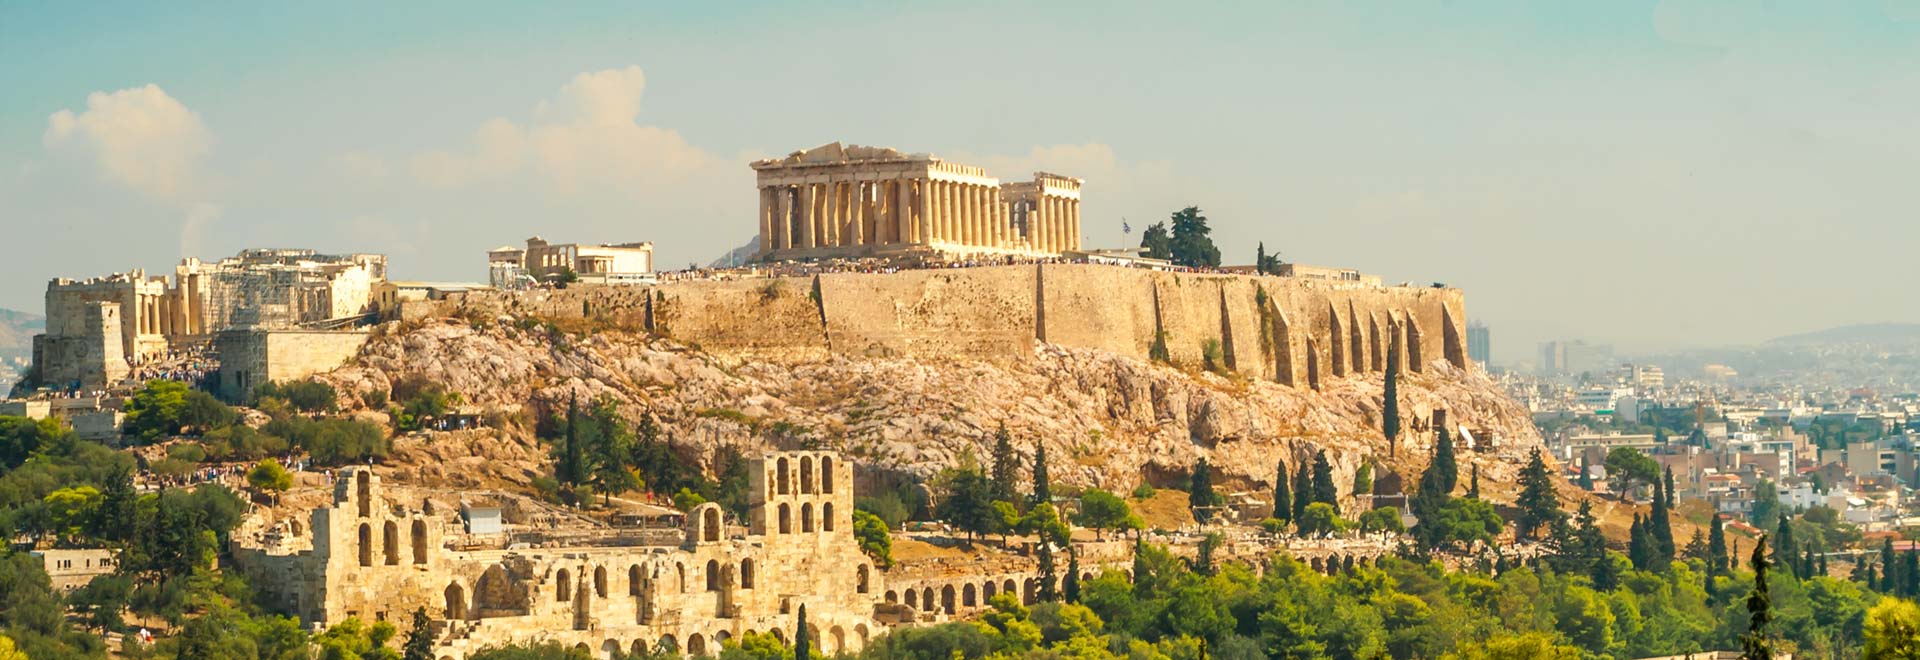 Europe Greece Athens Acropolis